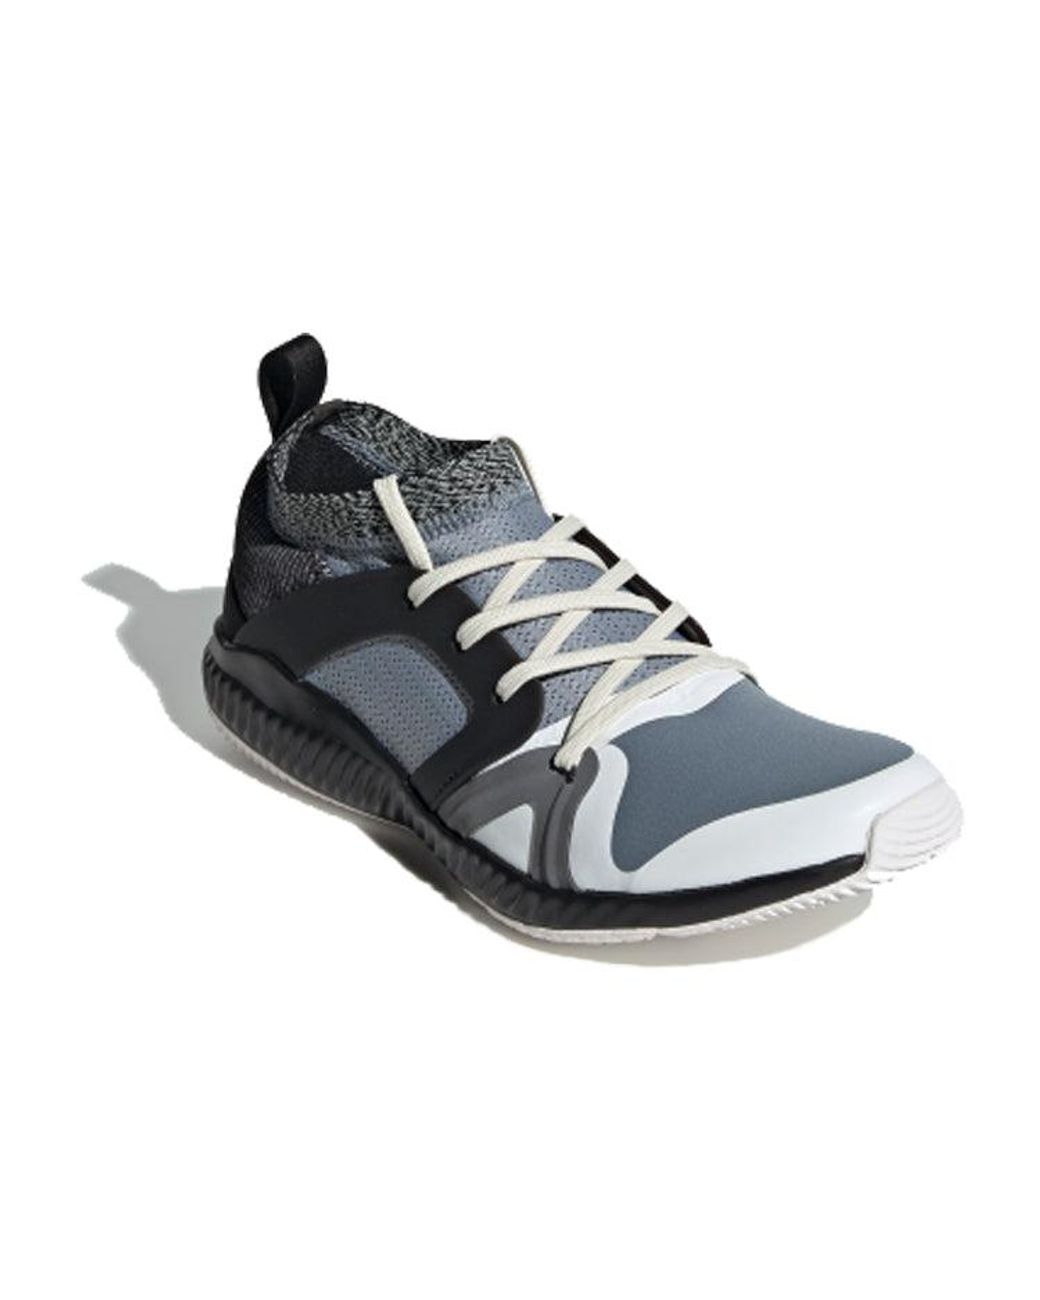 spiegel Uitbreiden Fantasierijk adidas Crazytrain Pro Grey/black | Lyst